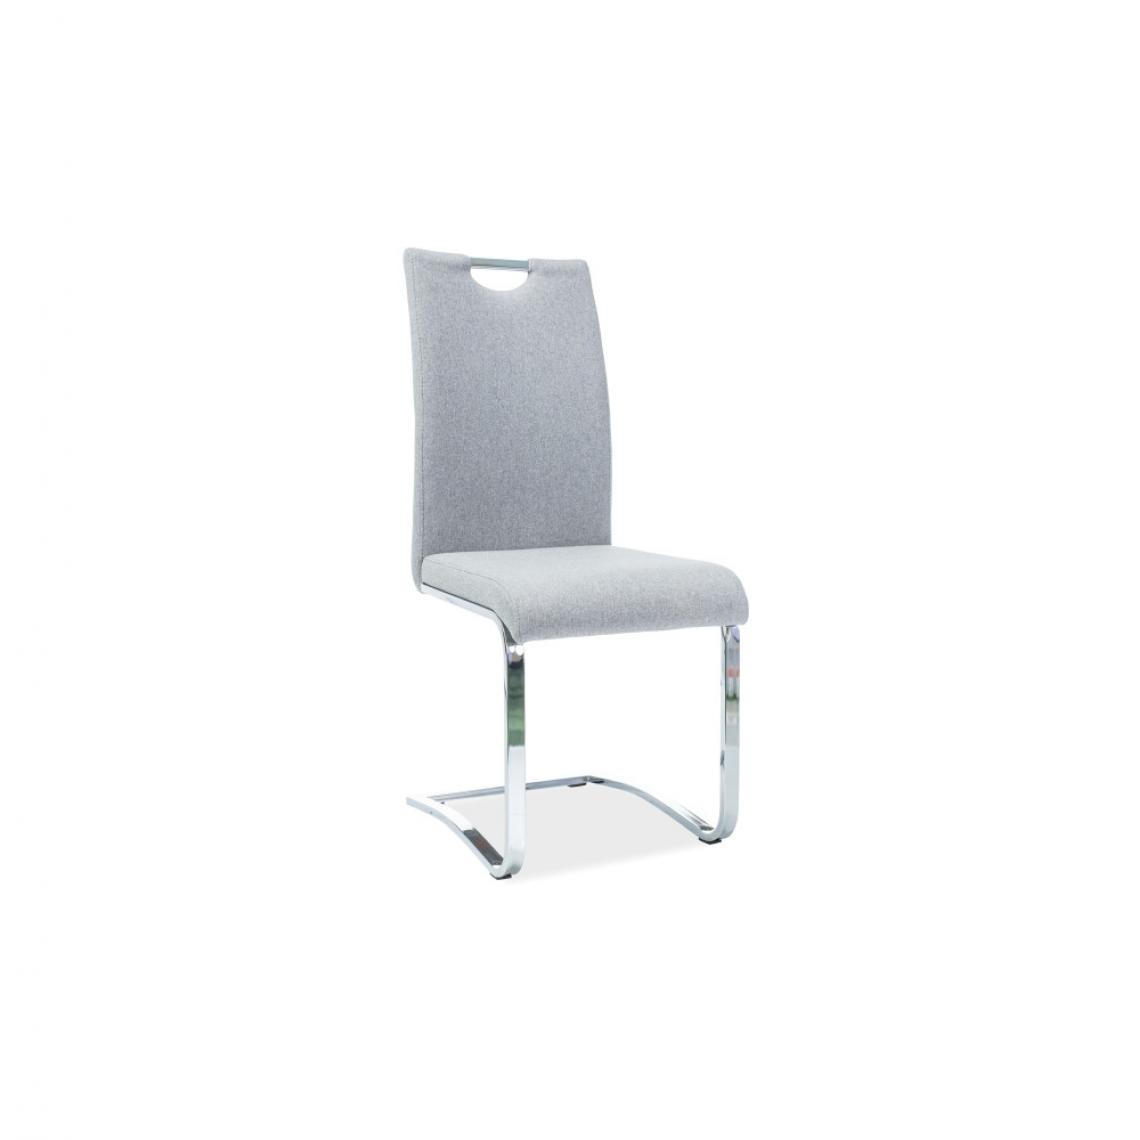 Ac-Deco - Chaise - L 42 x l 43 x H 120 cm - Gris - Chaises